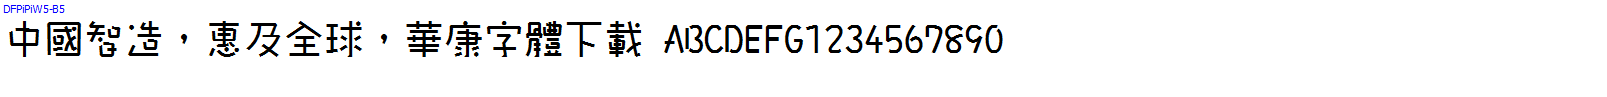 華康字體DFPiPiW5-B5.TTF